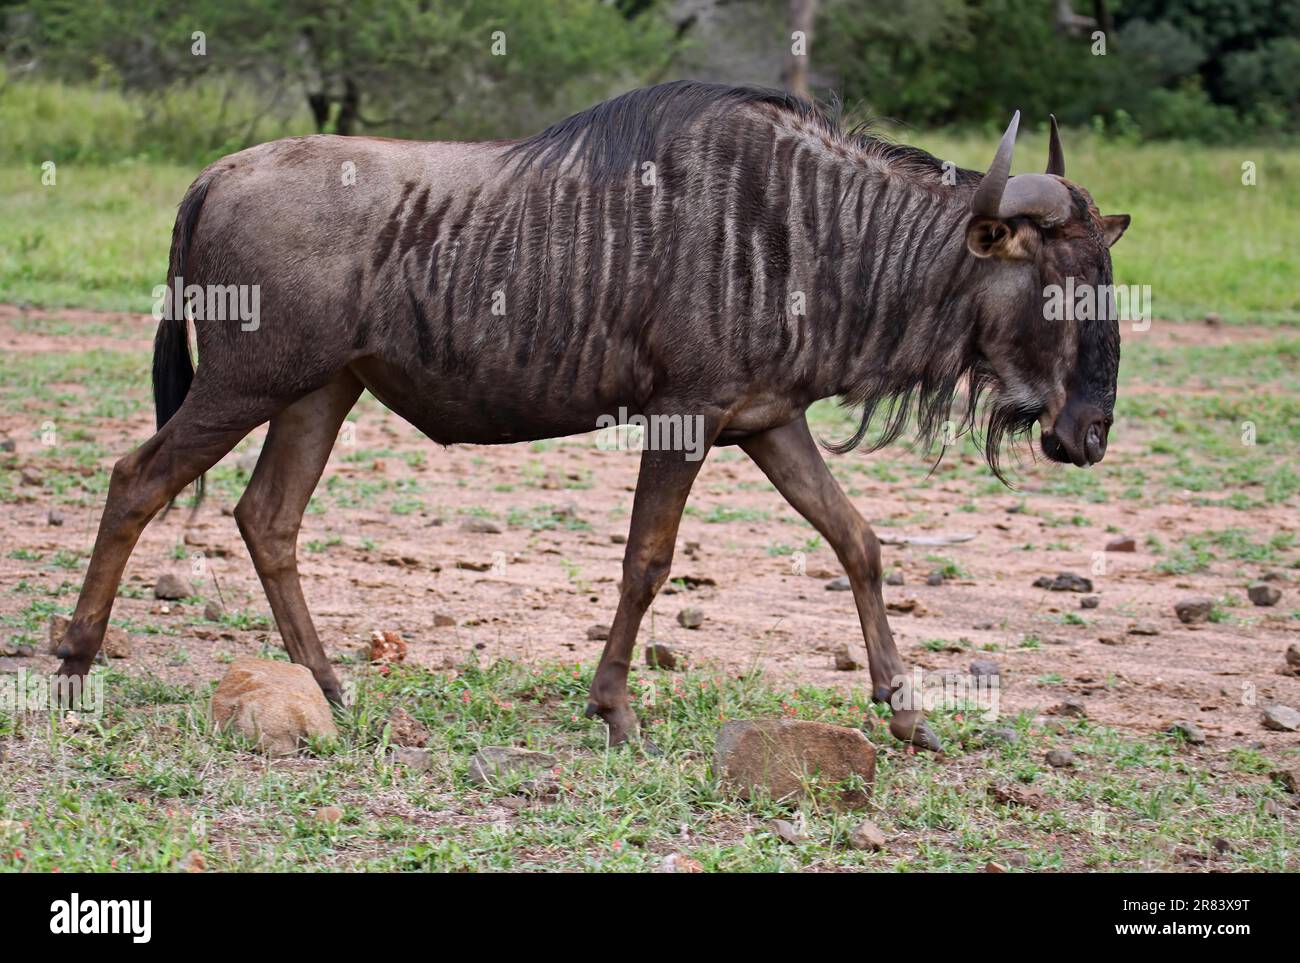 Streifengnu, blue wildebeest (Connochaetes taurinus), S Stock Photo